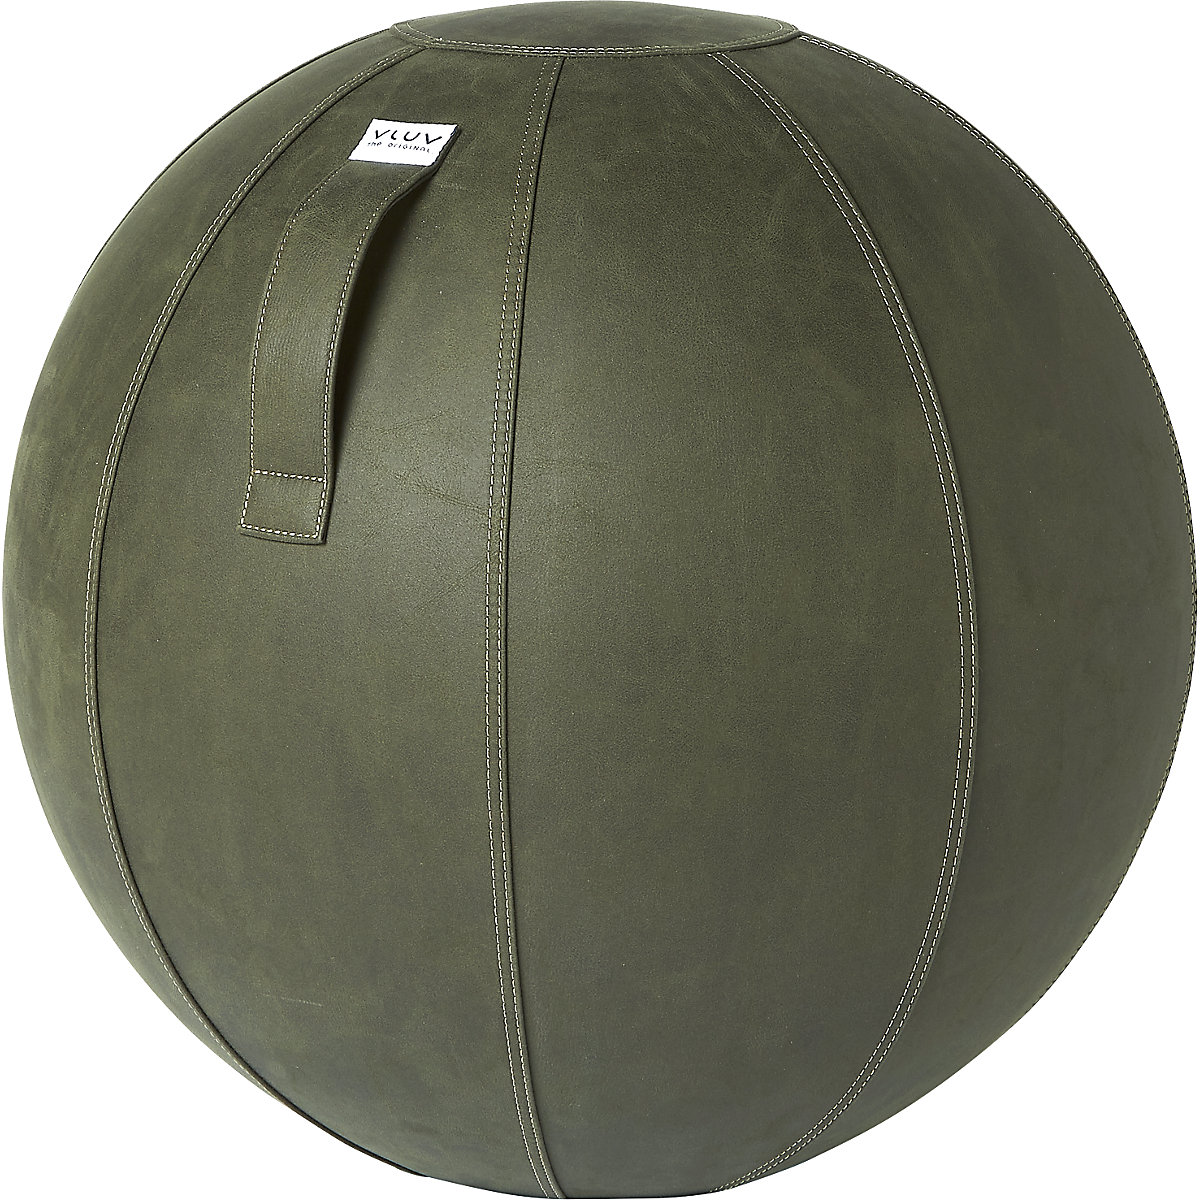 Fitball VEGA – VLUV, similpelle vegana, 600 – 650 mm, verde muschio-9